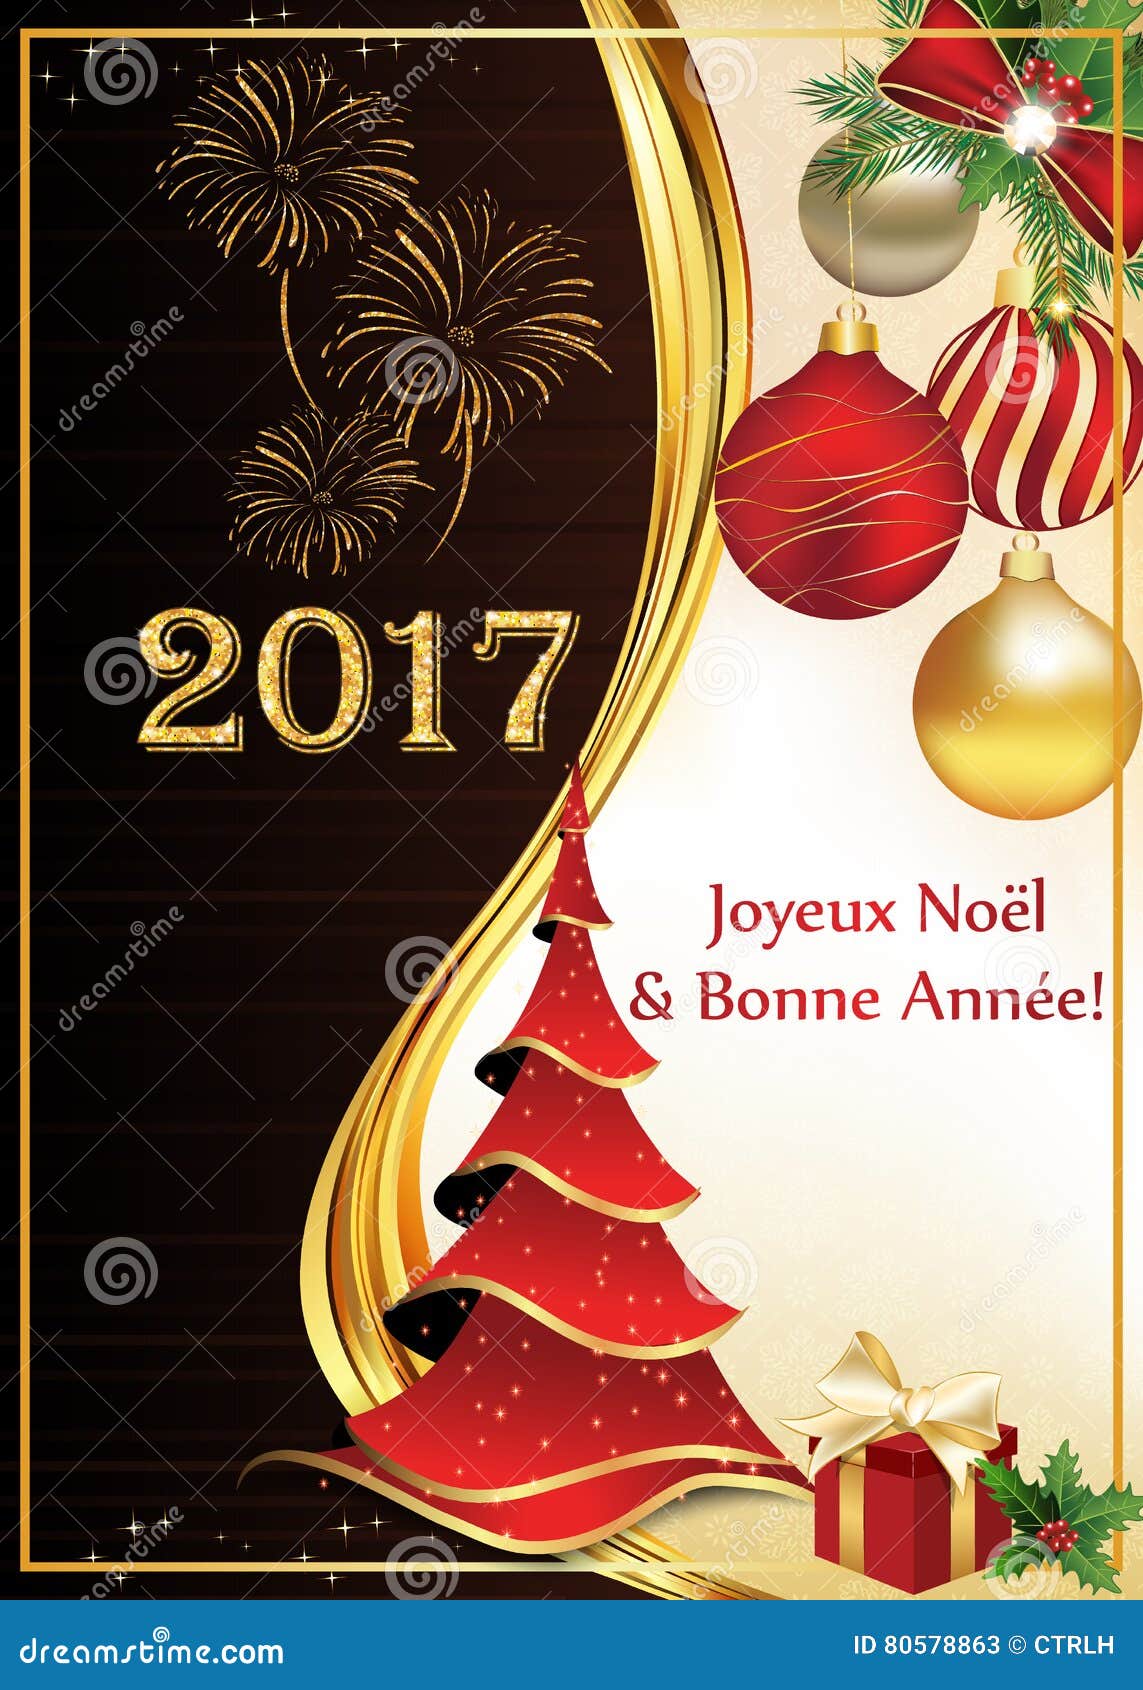 Auguri Buon Natale In Francese.Cartolina D Auguri Del Buon Anno E Di Buon Natale In Francese Illustrazione Di Stock Illustrazione Di Bacca Francese 80578863